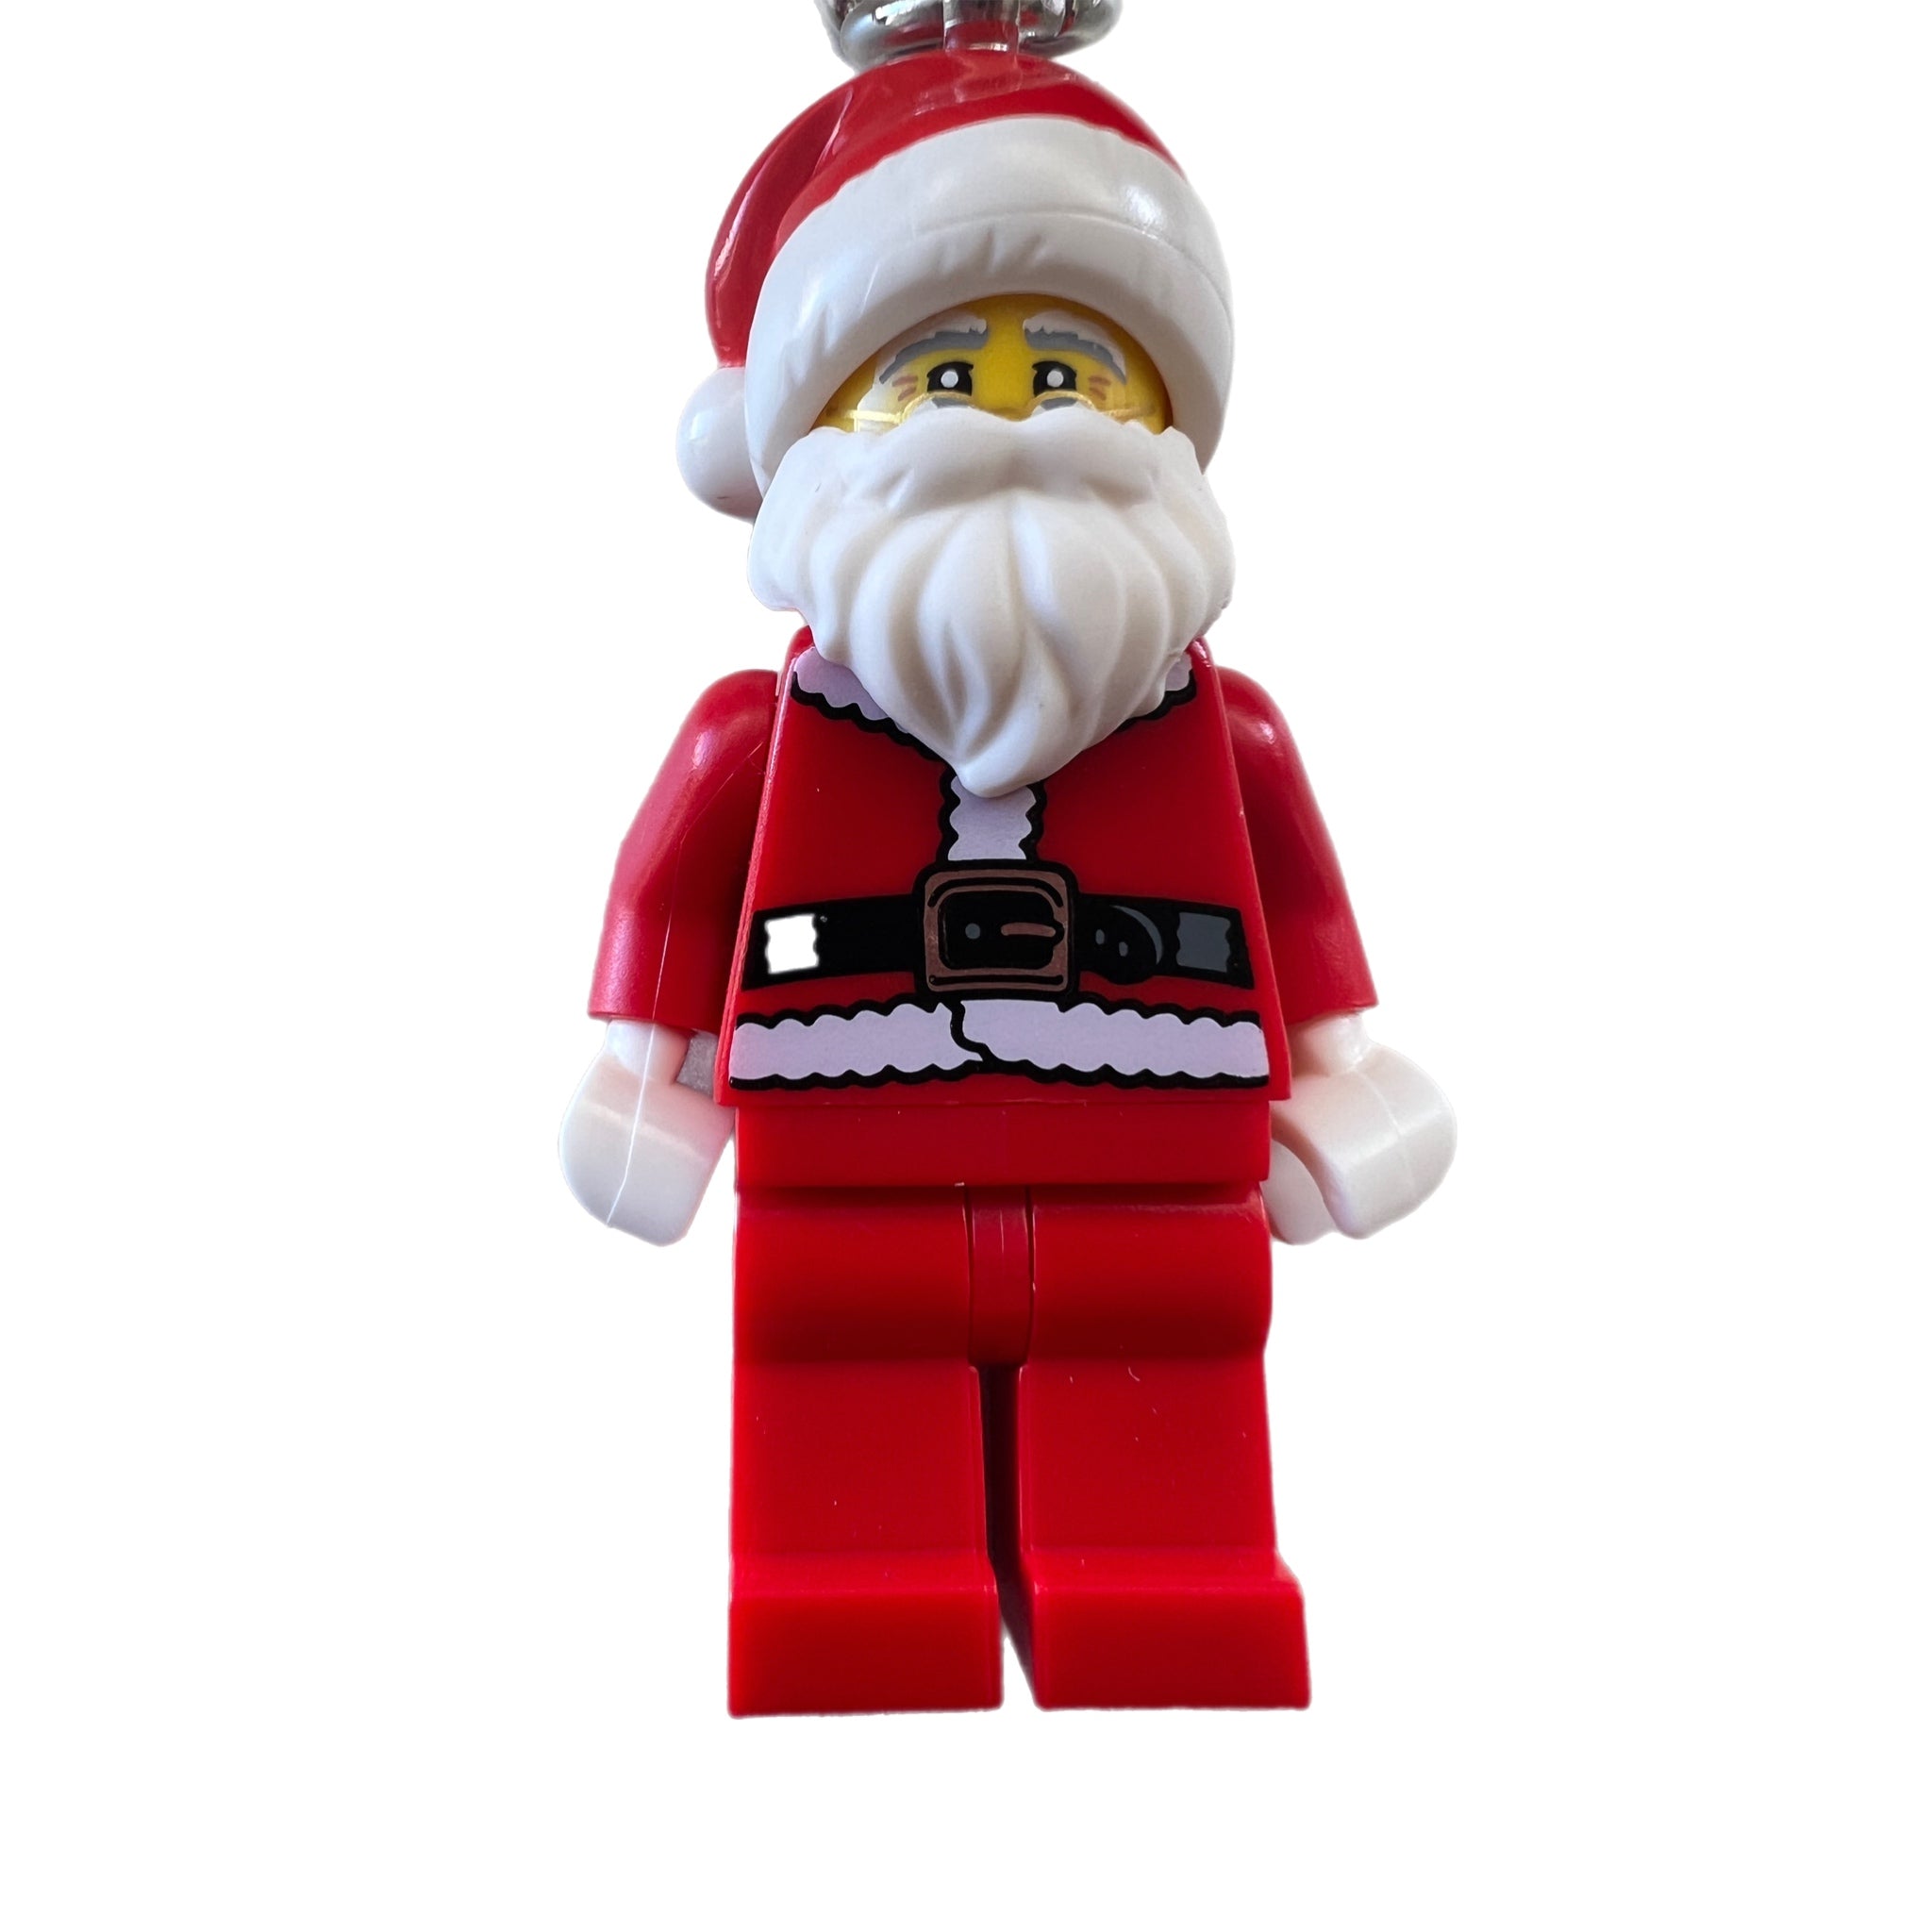 Lego Santa Key chain 854040